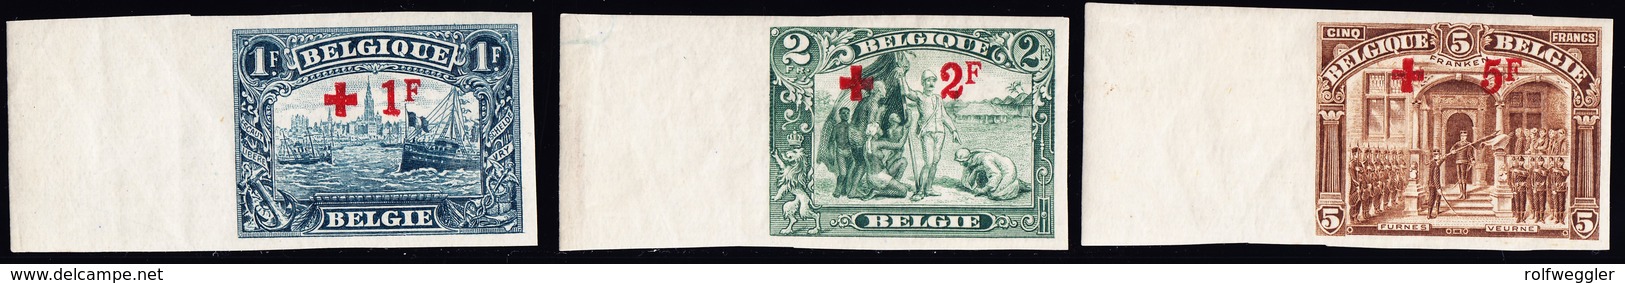 1918 Rotkreuz Überdruck Aus Serie 14 Werte Ungezähnt - 1918 Croix-Rouge